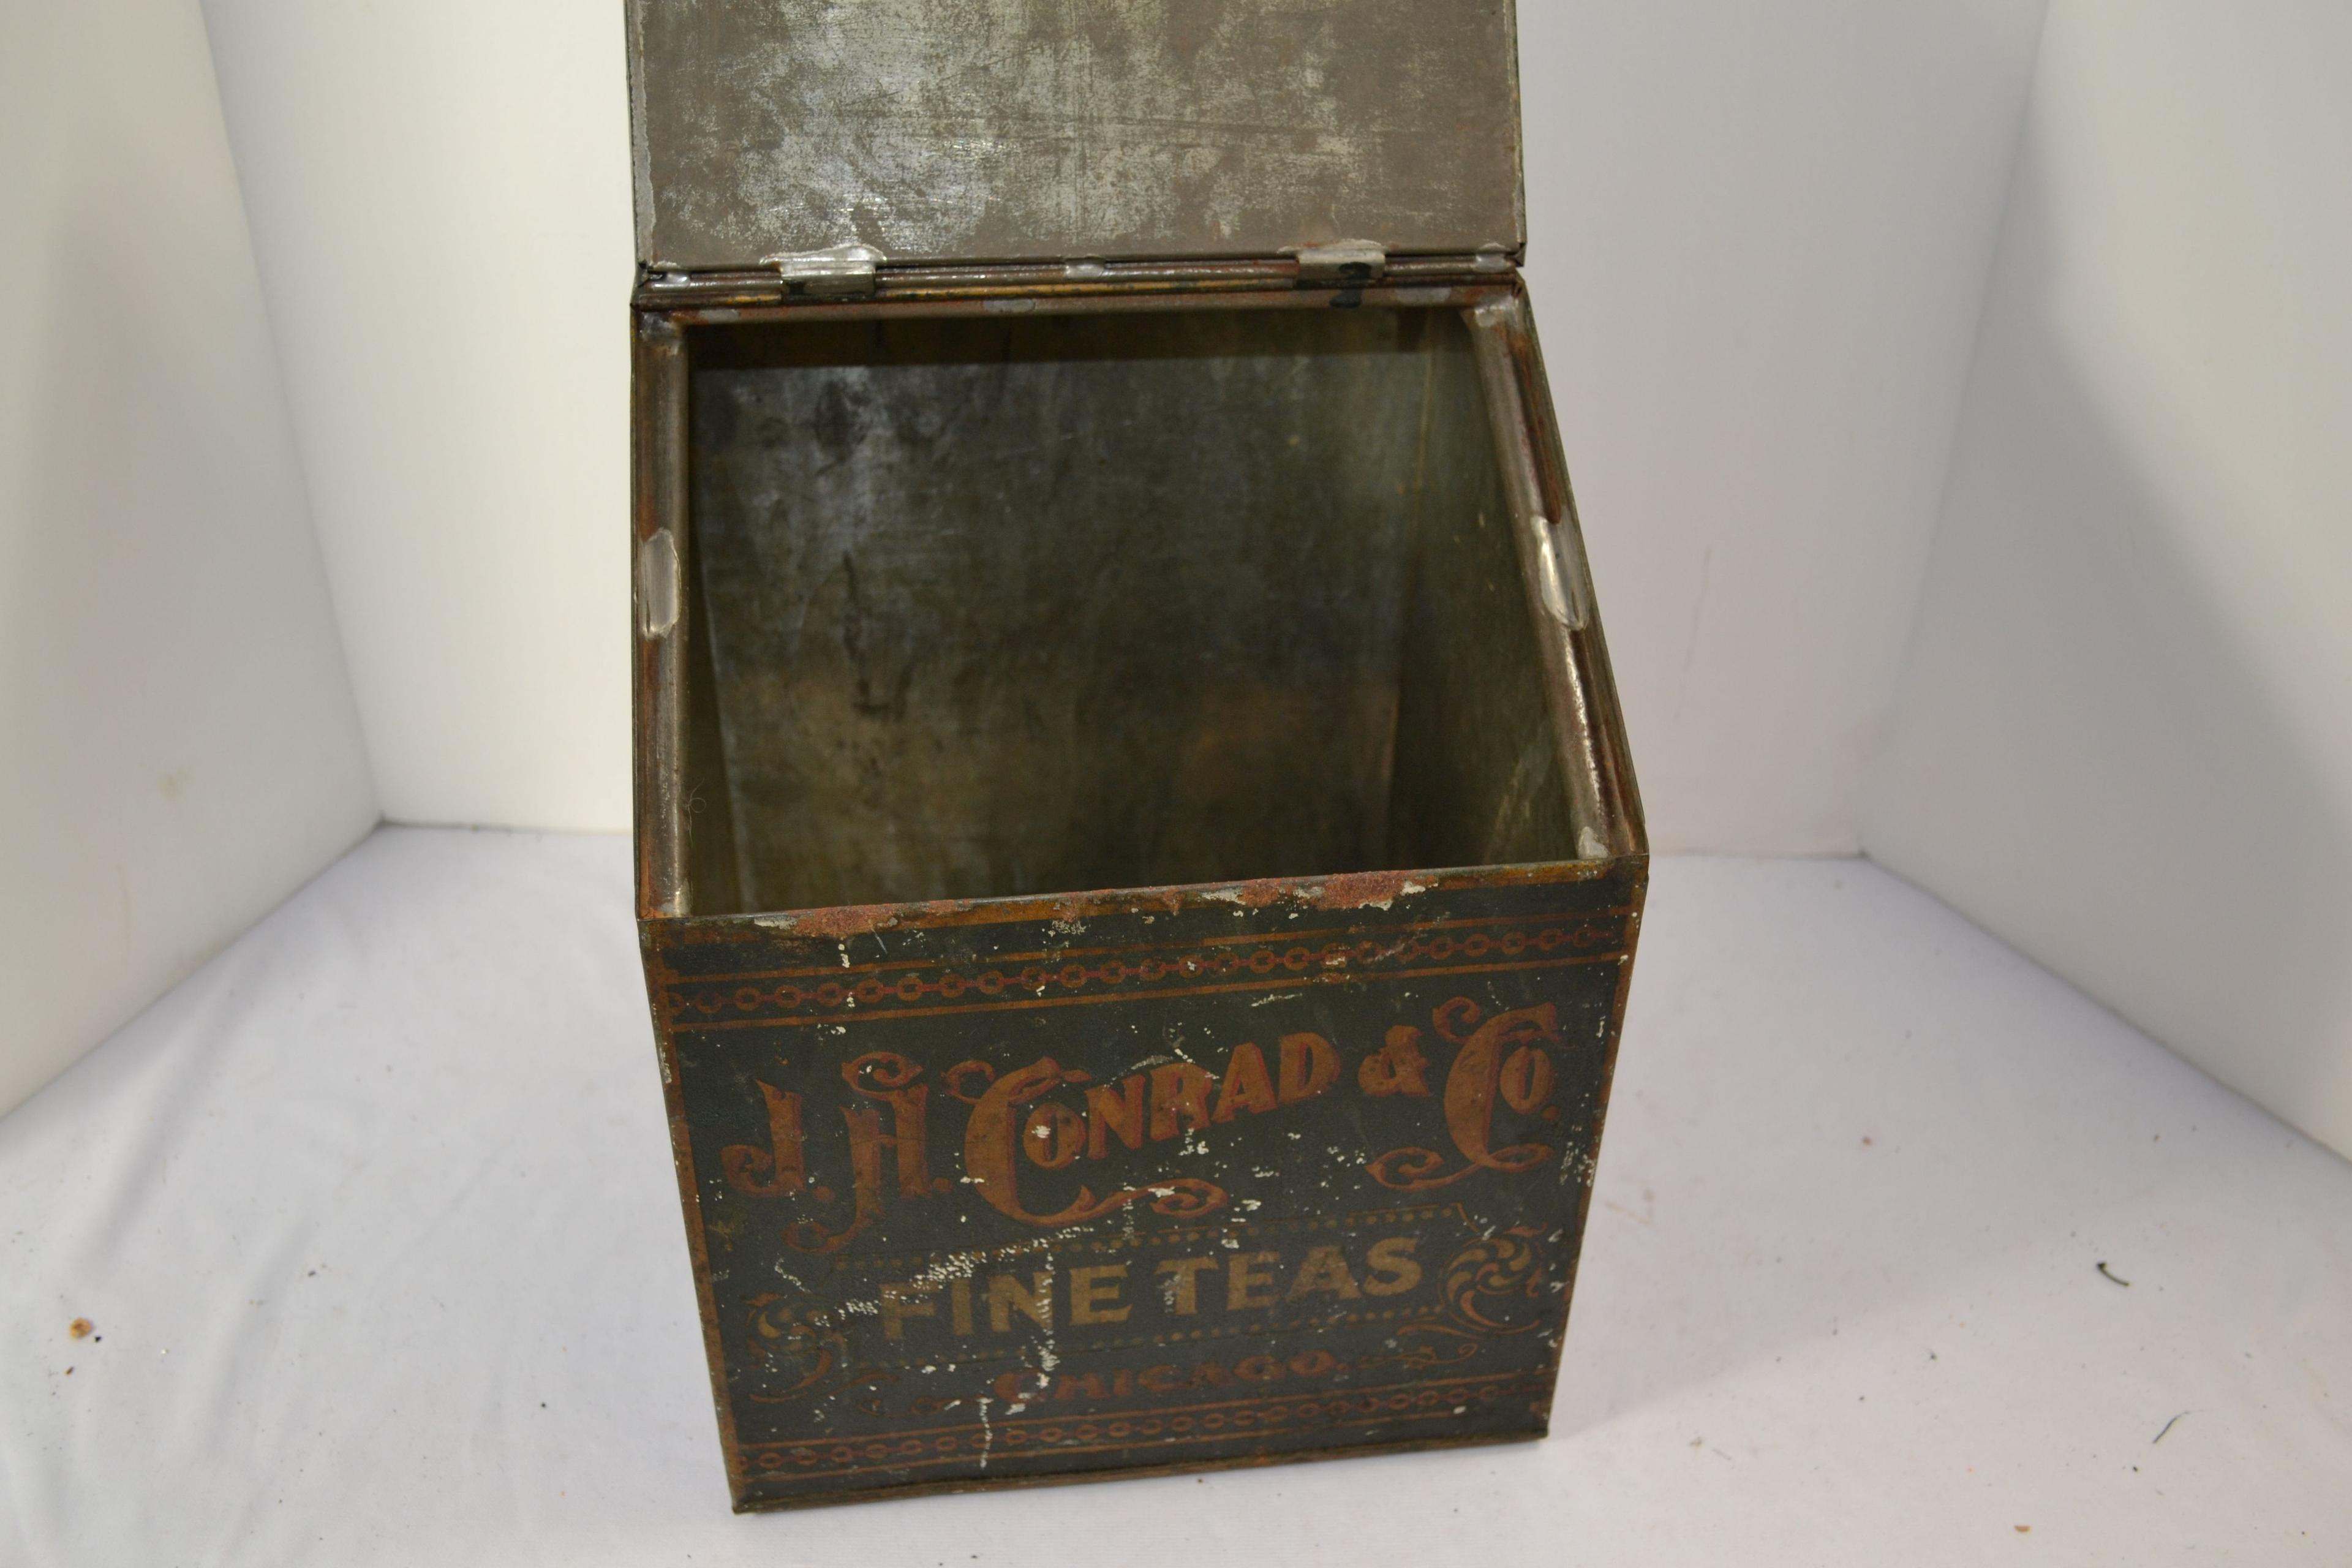 Vintage Tin J.H. Conrad & Co. Tea Tin; 12"x10"